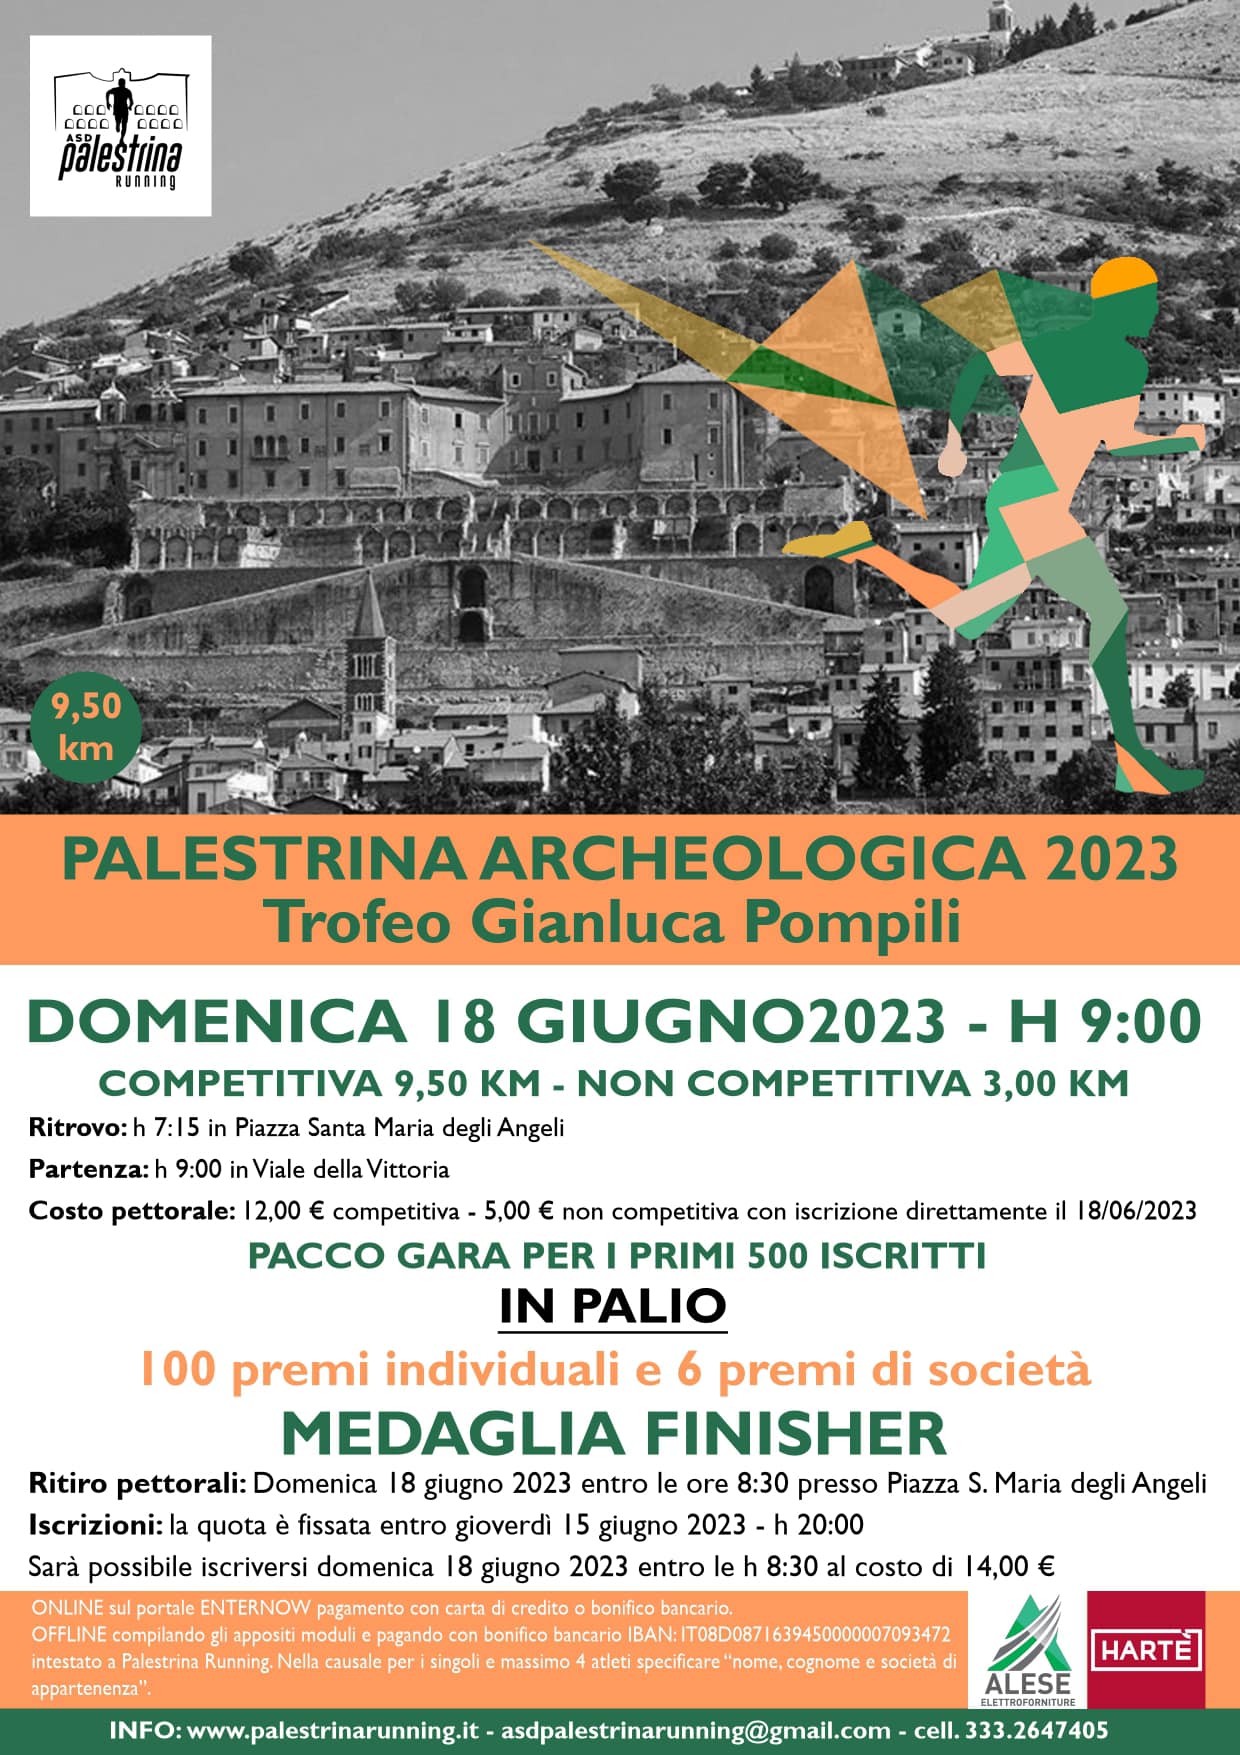 Palestrina Archeologica | ASD Palestrina Running